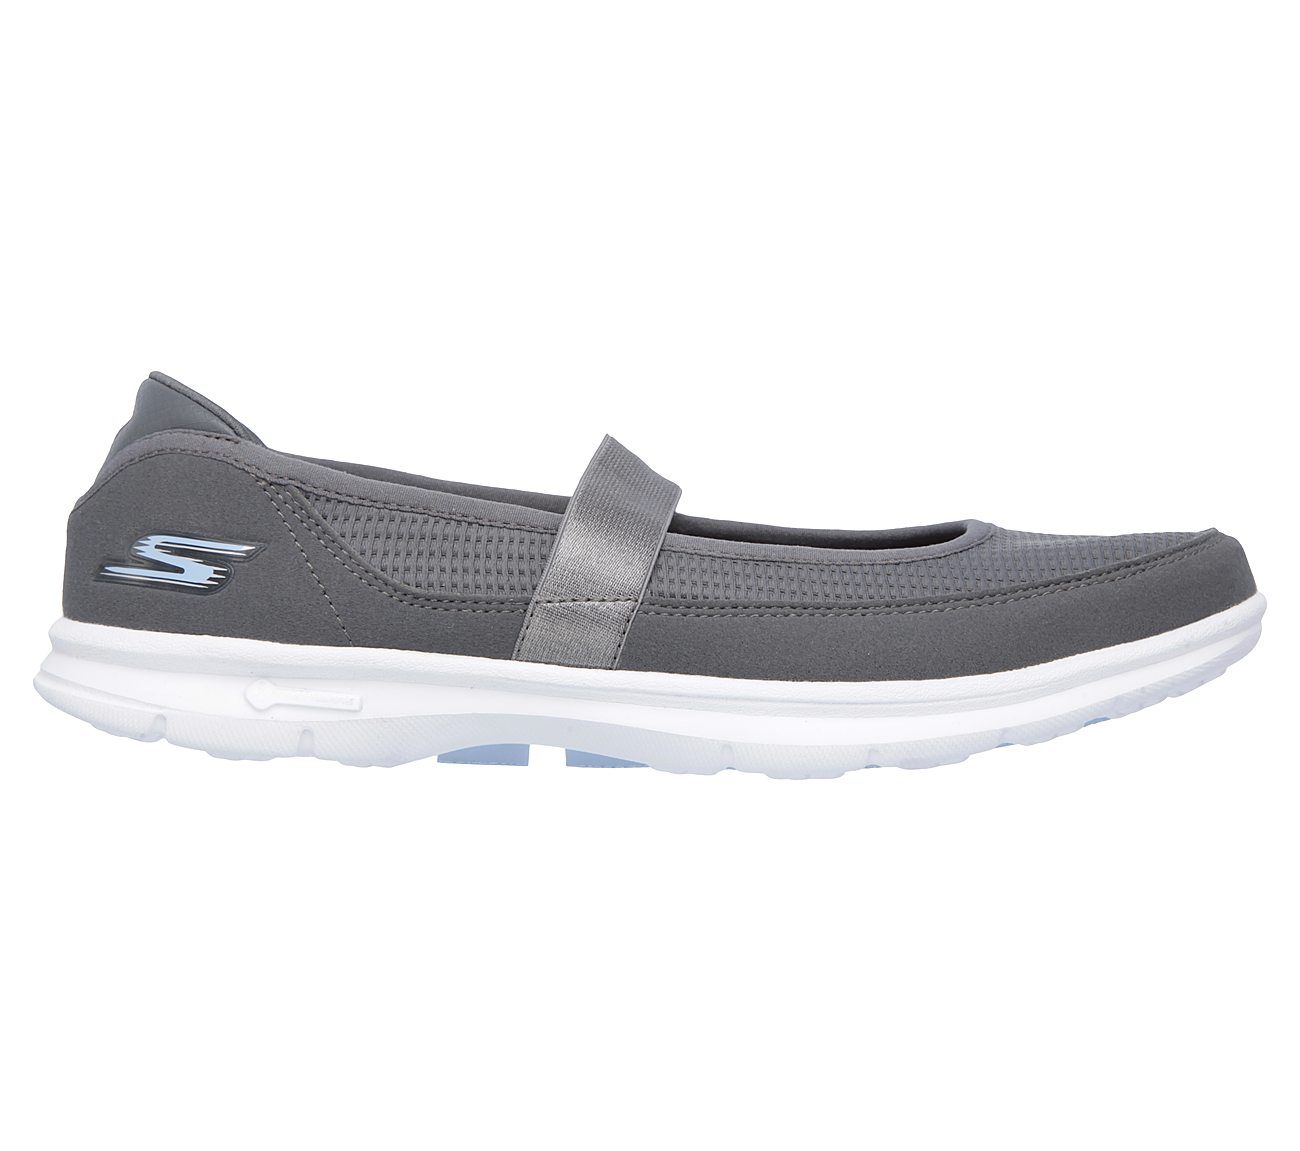 Buy SKECHERS Skechers GO STEP - Original Comfort Shoes Shoes